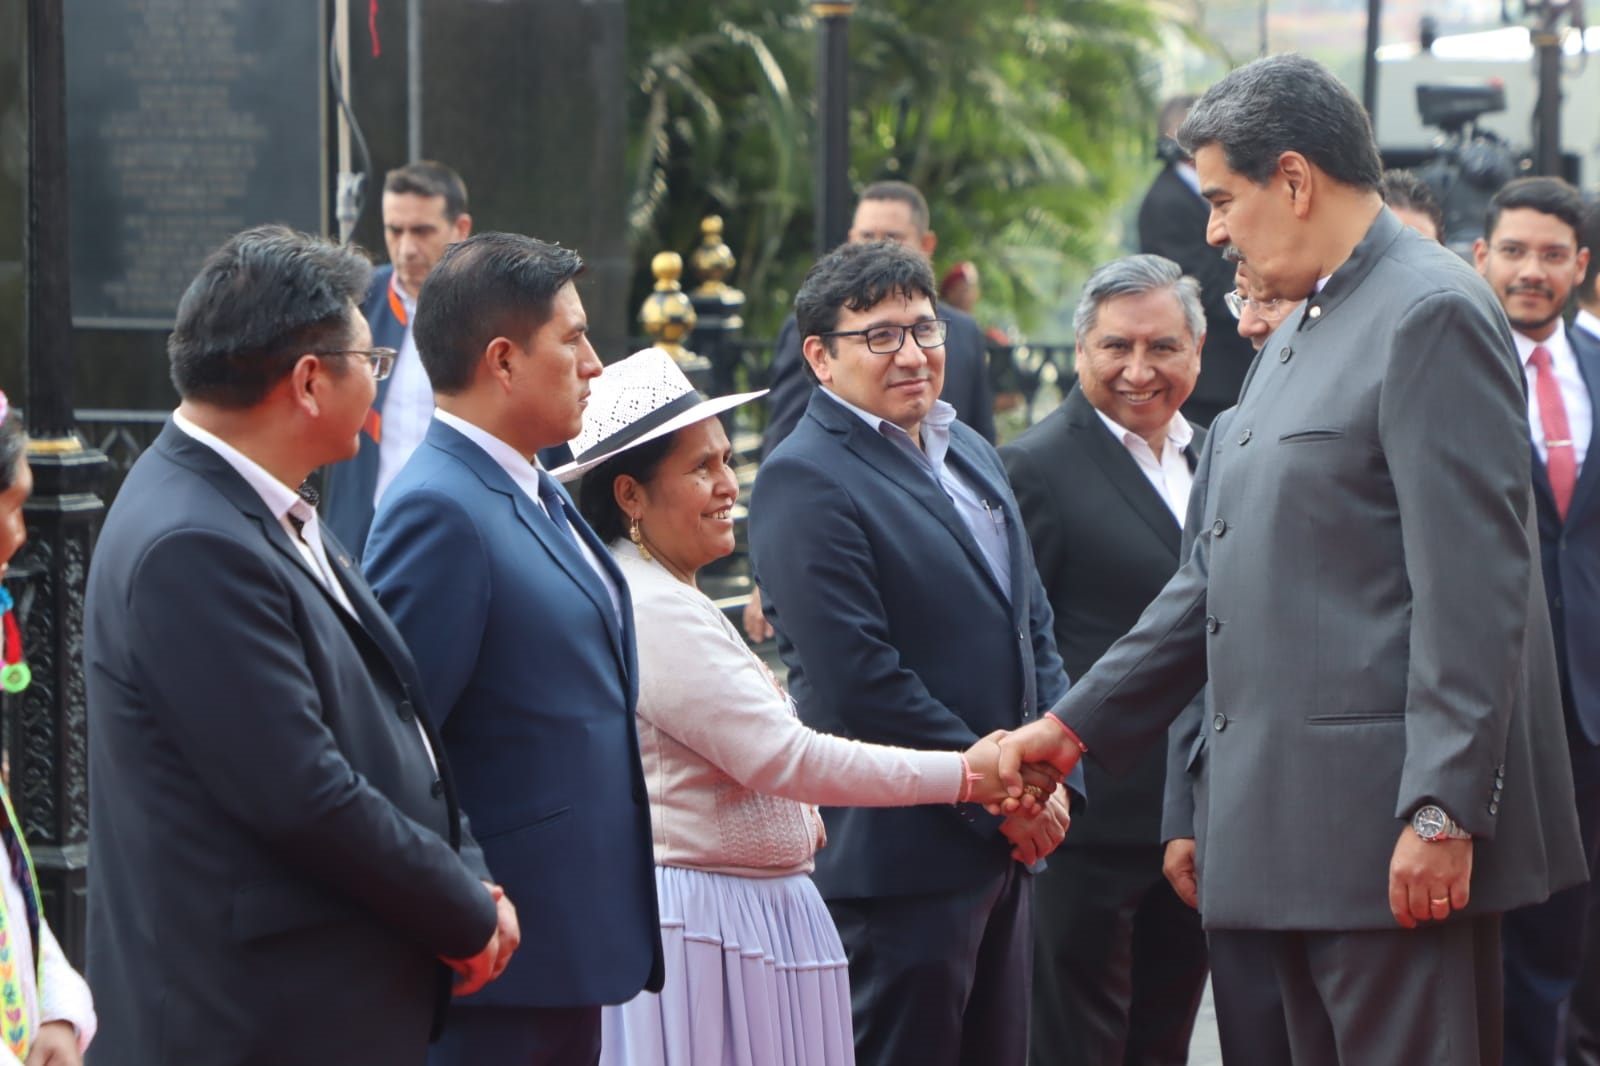 Presidente Maduro saluda a la Ministra de Culturas en la III Comisión de Integración Conjunta #Venezuela🇻🇪 – #Bolivia🇧🇴